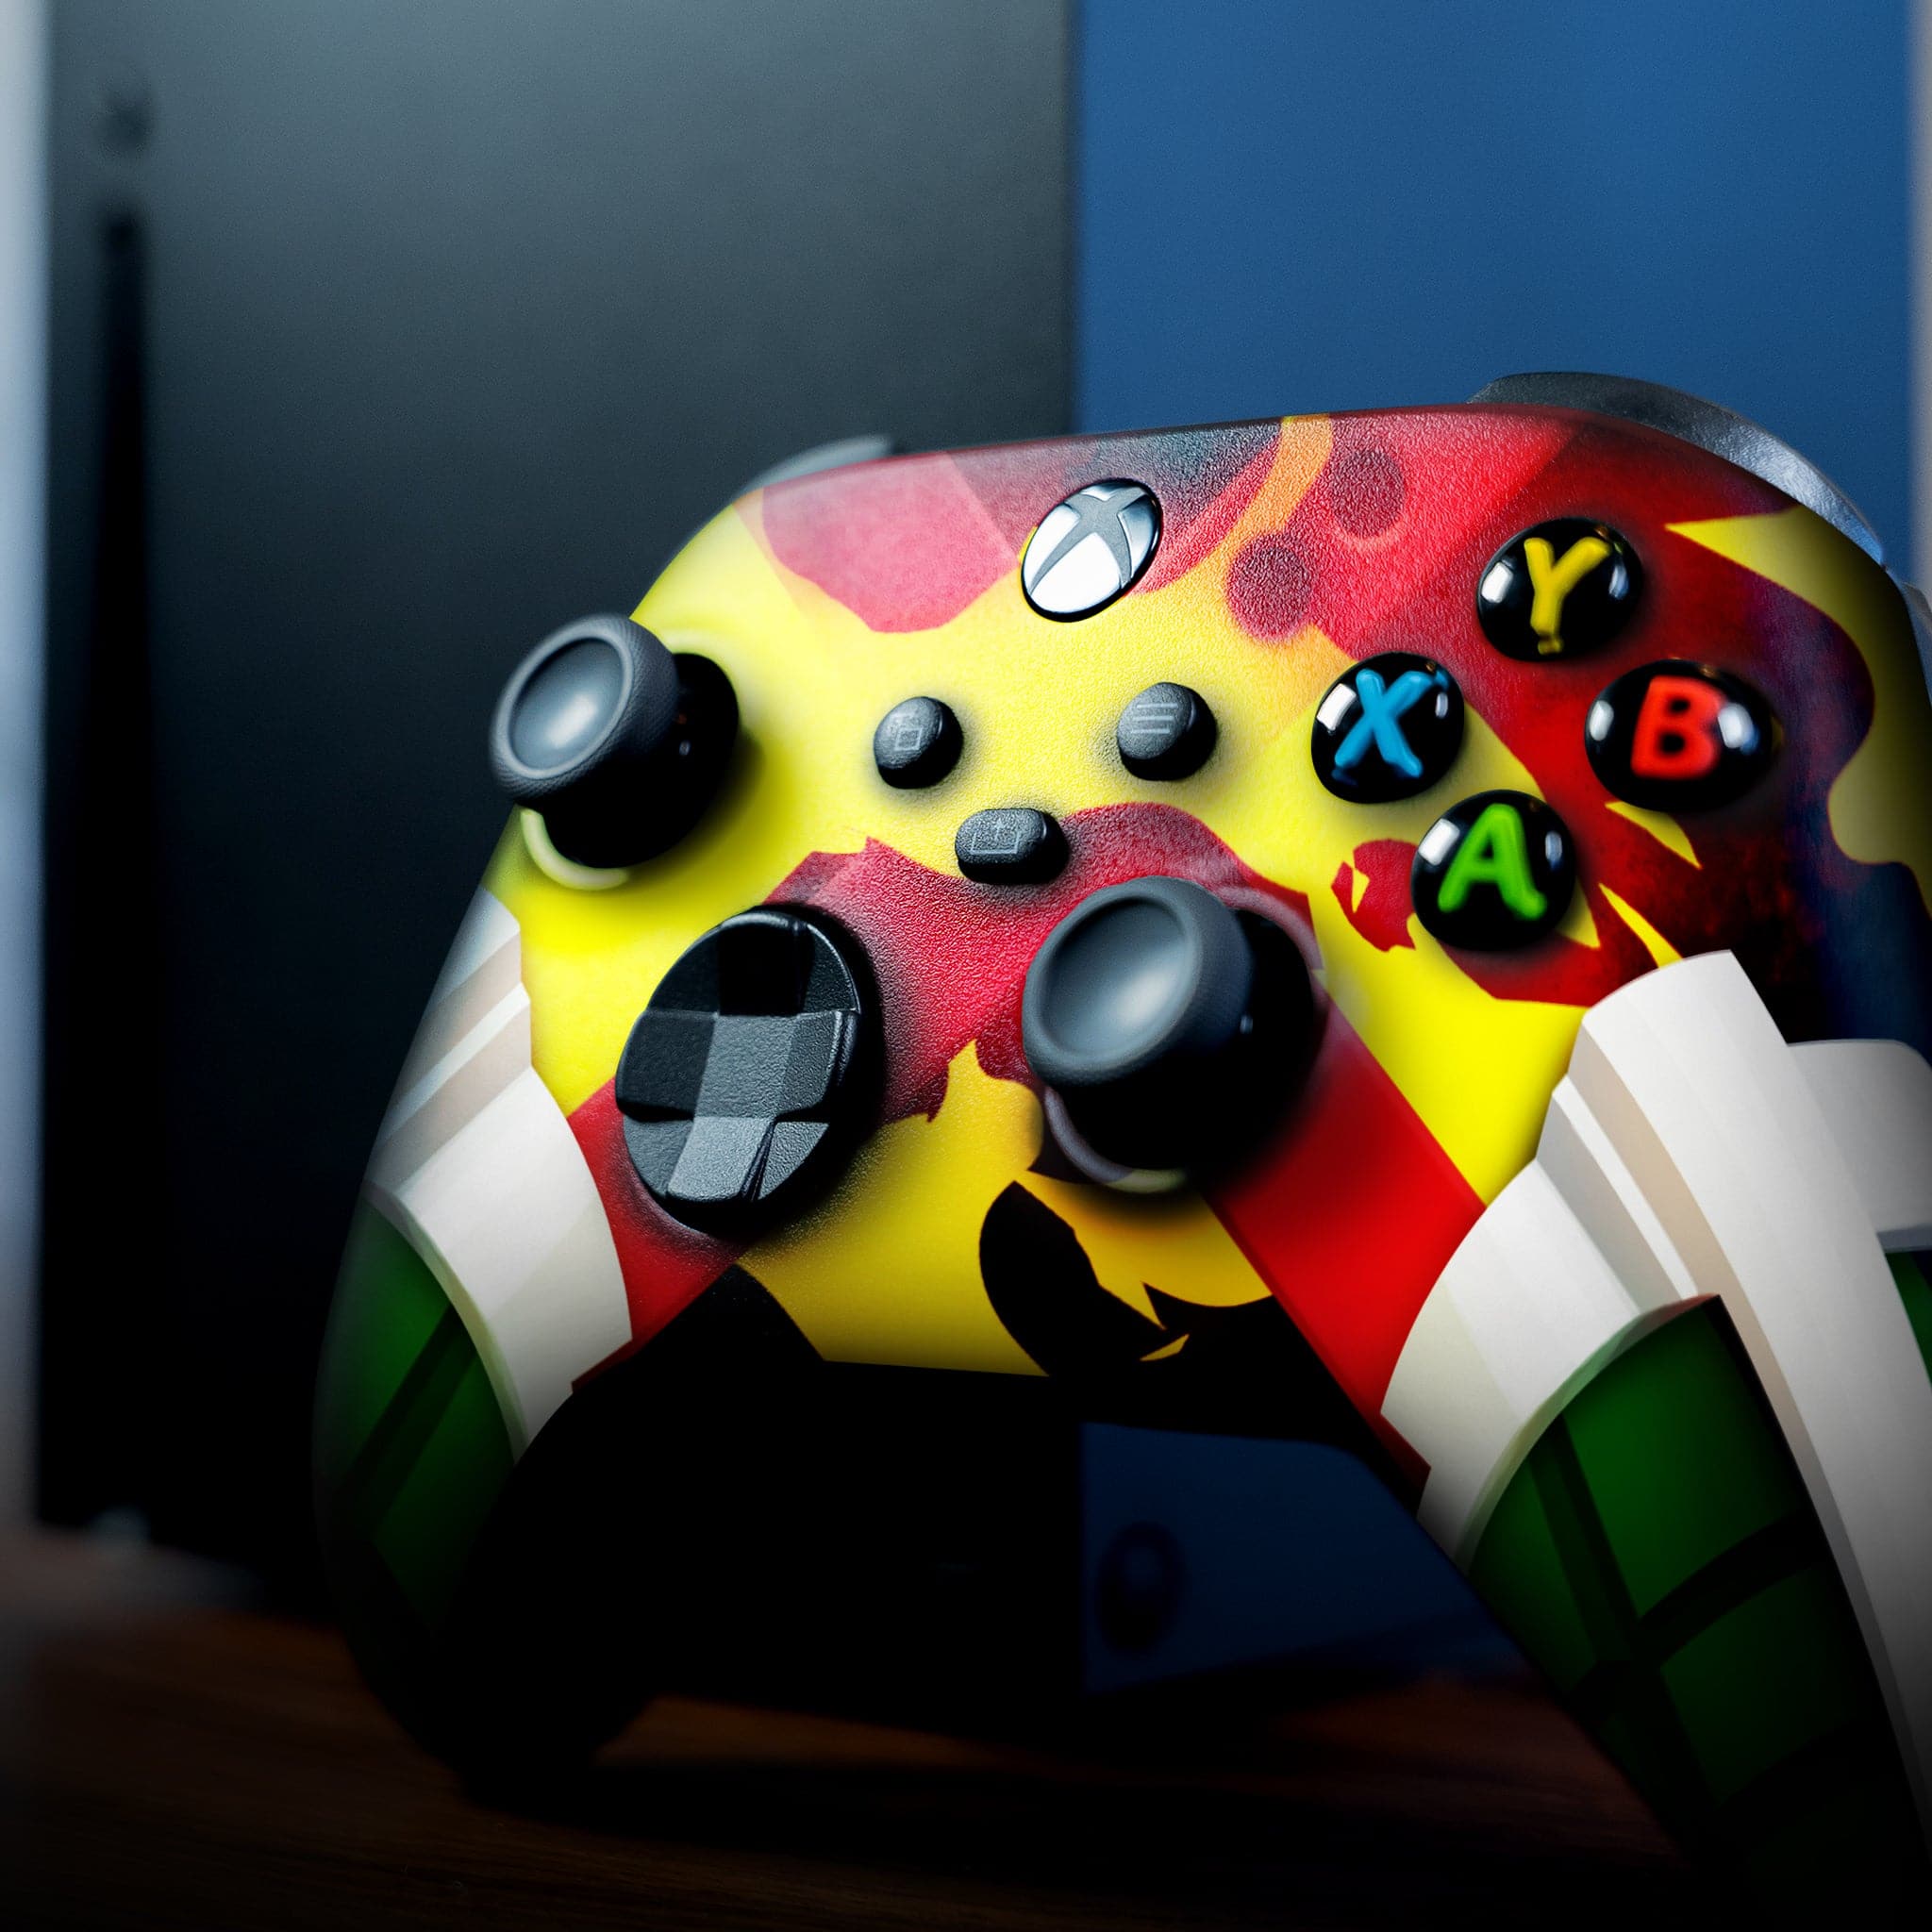 Bakugo Xbox Series X Controller | New Xbox One Controller